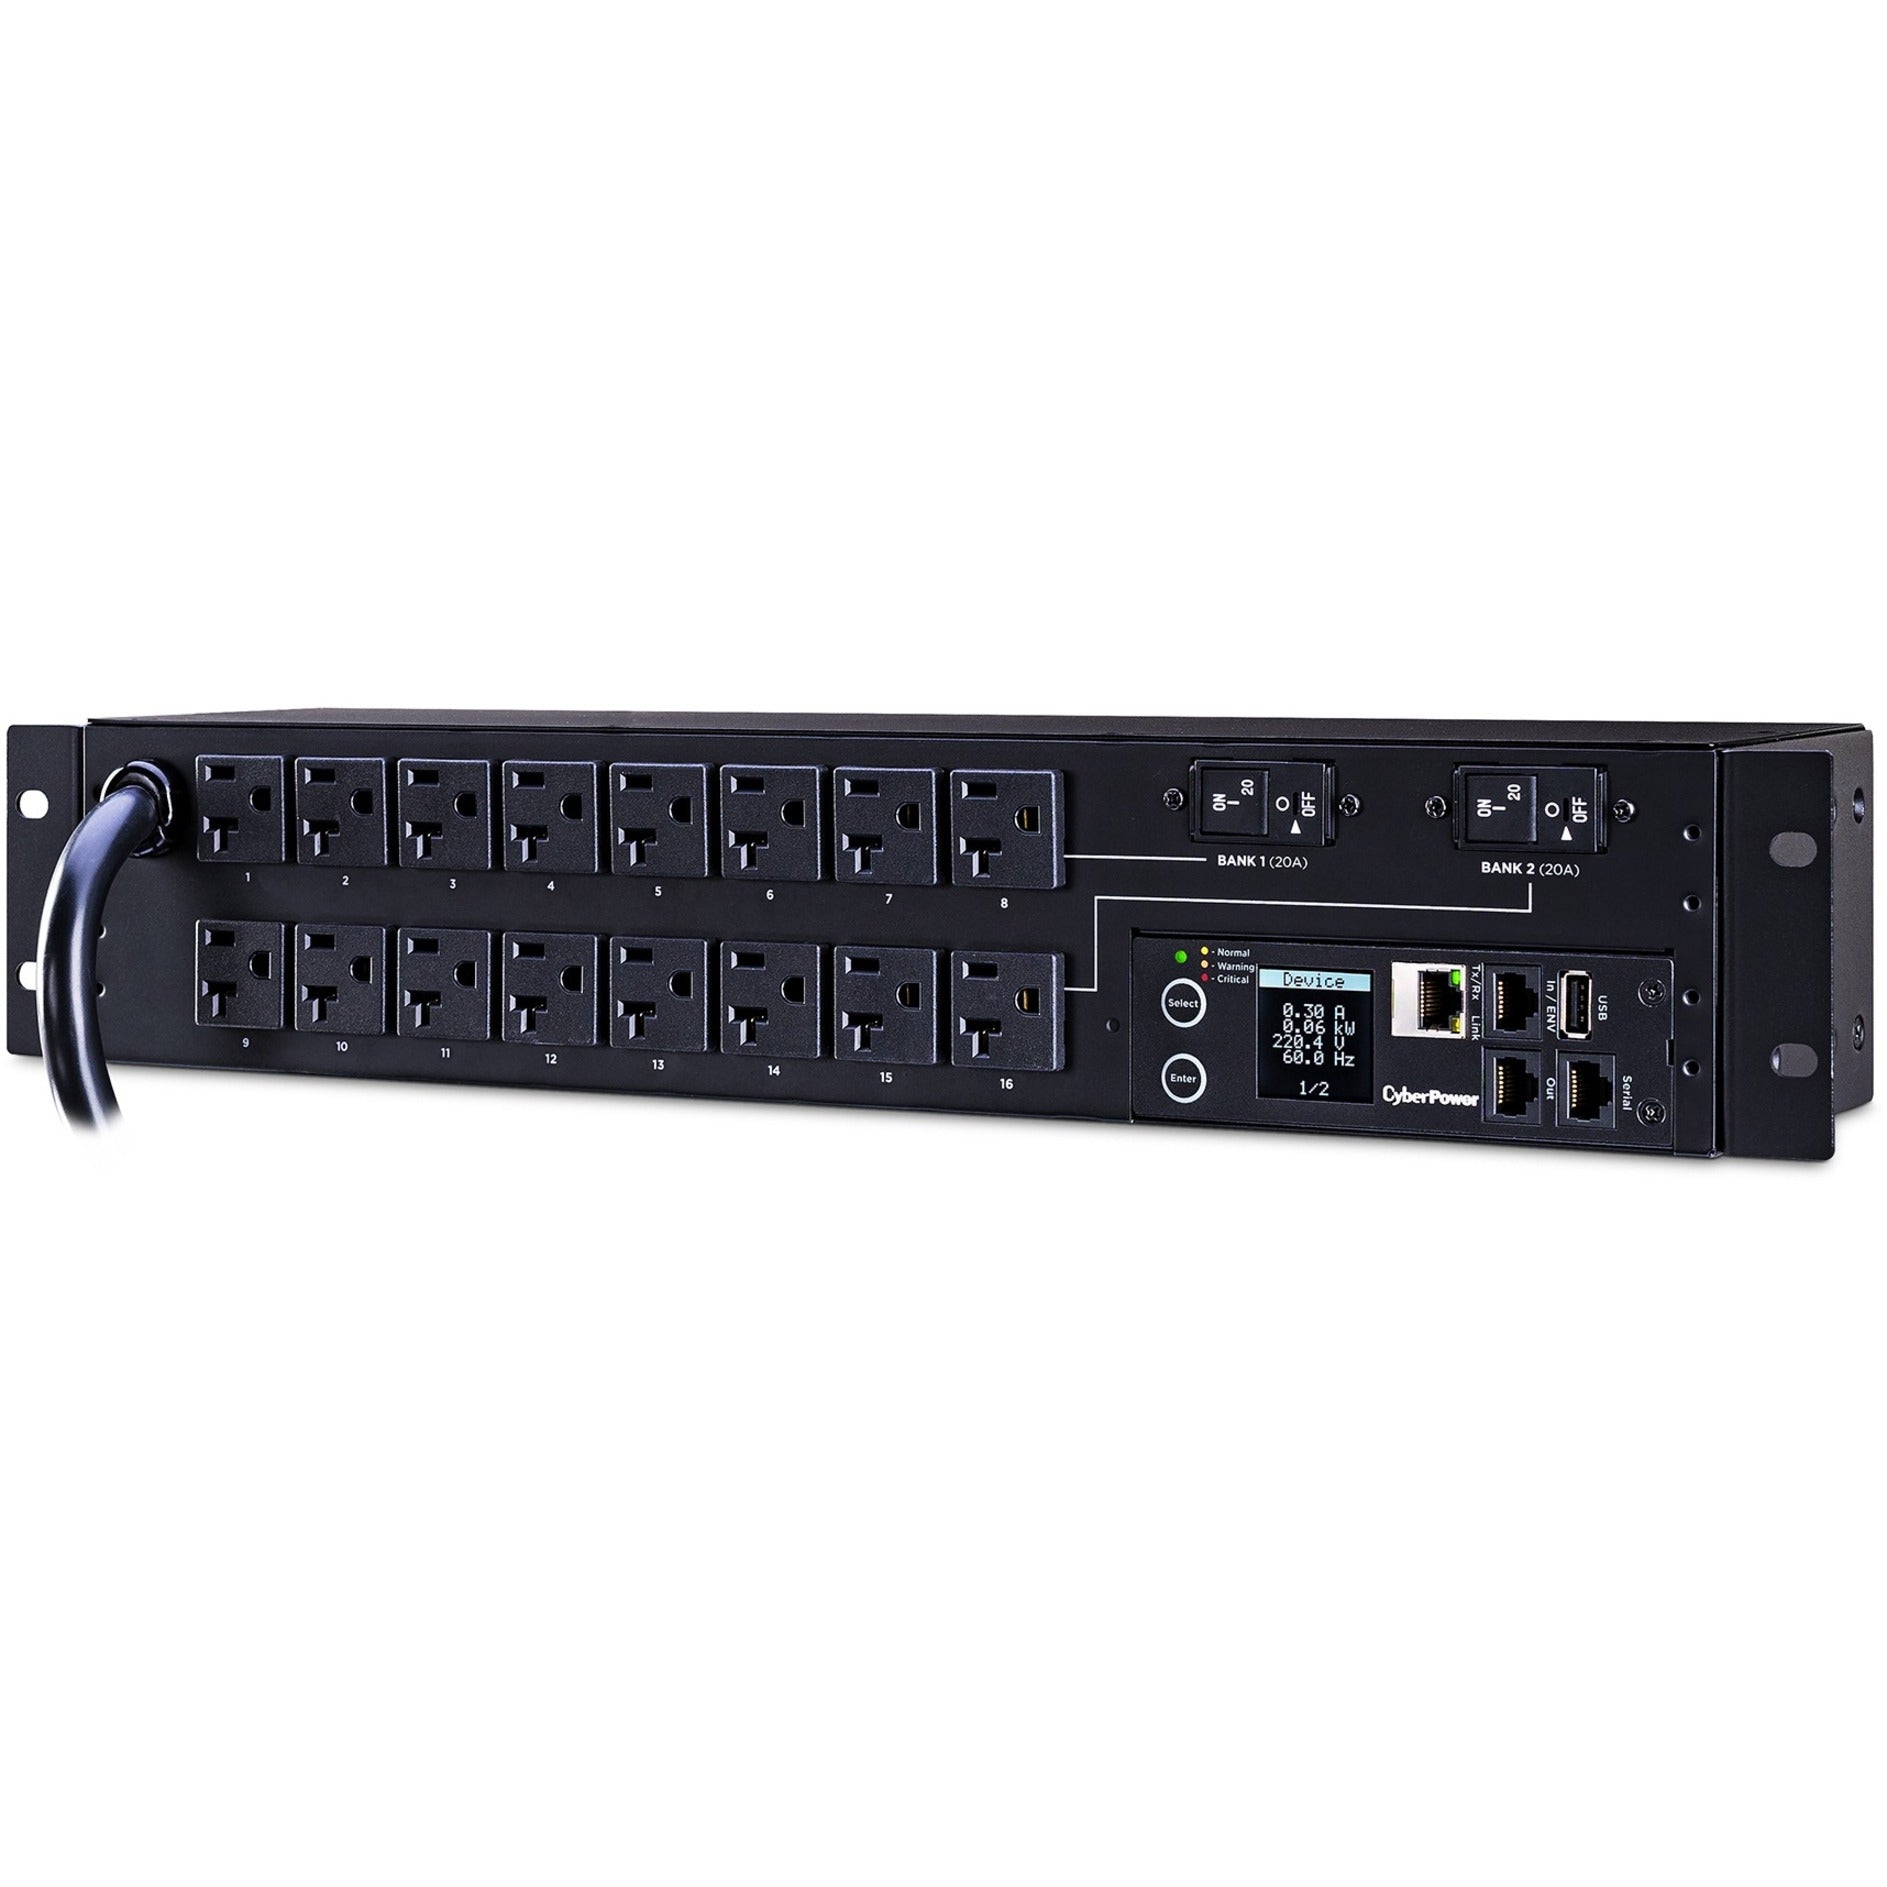 CyberPower PDU31003 16-Outlet PDU, 120V, 12ft Cord, 2U, 3-Year Warranty